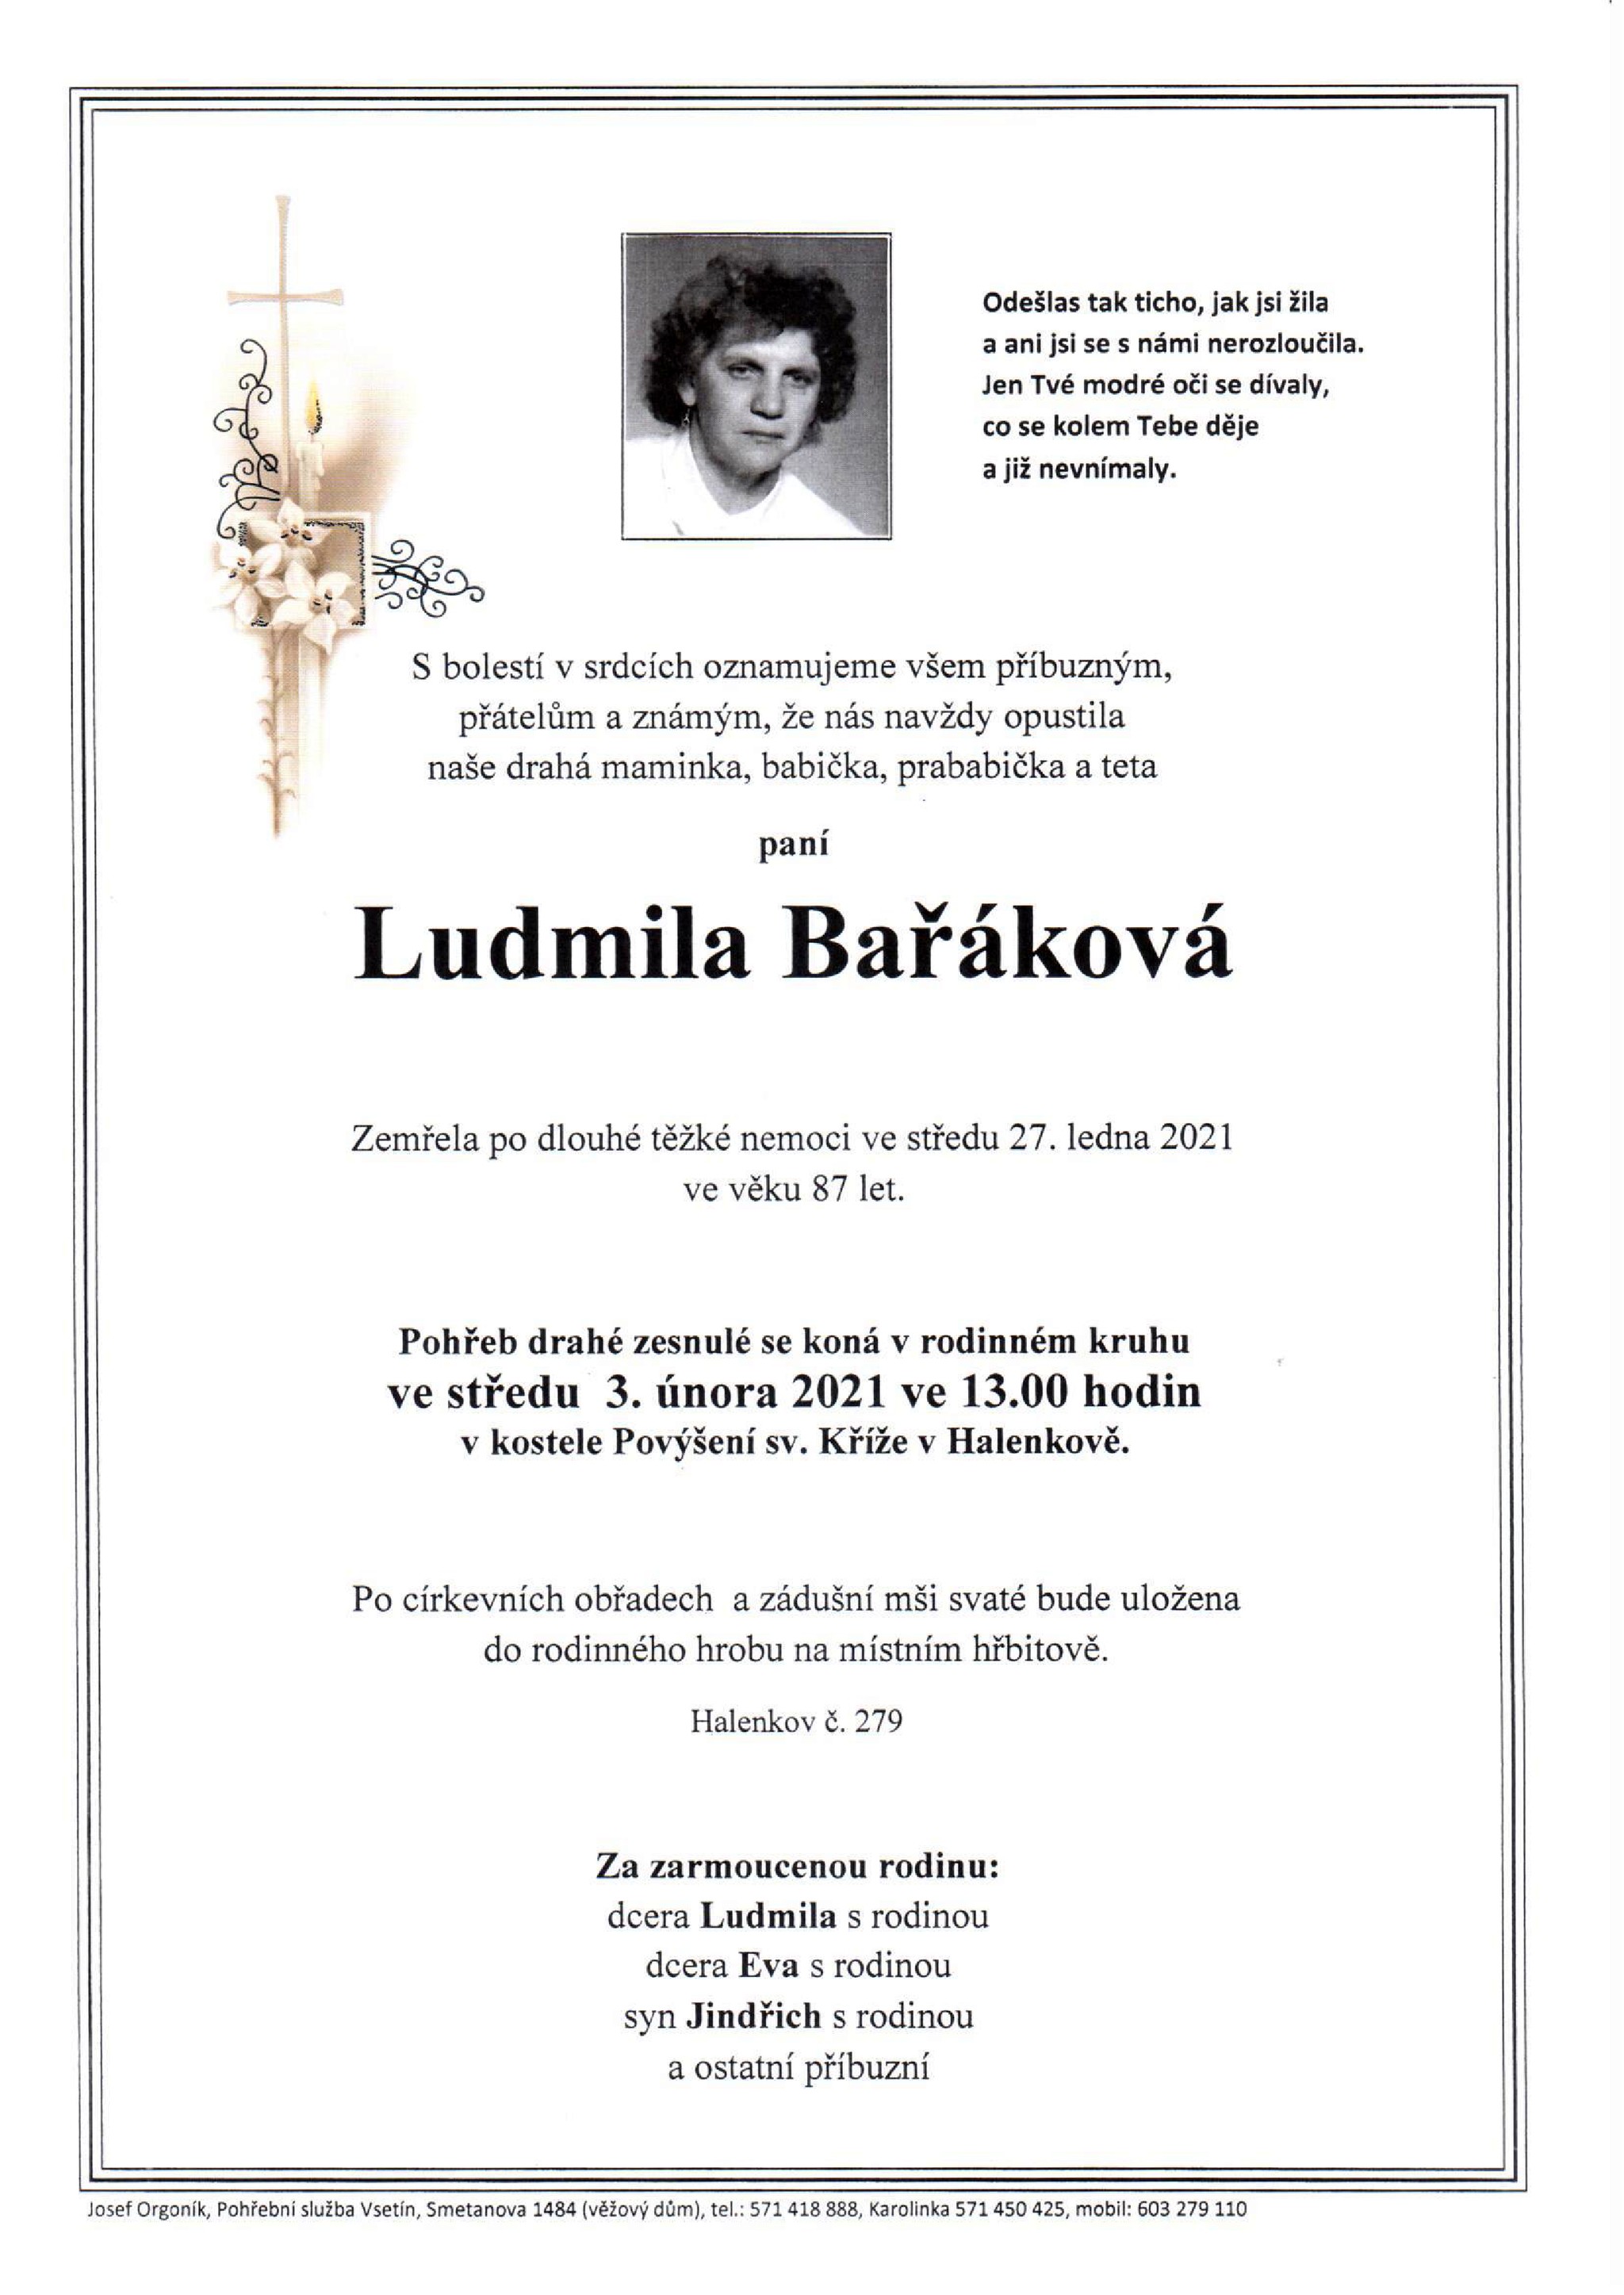 Ludmila Bařáková